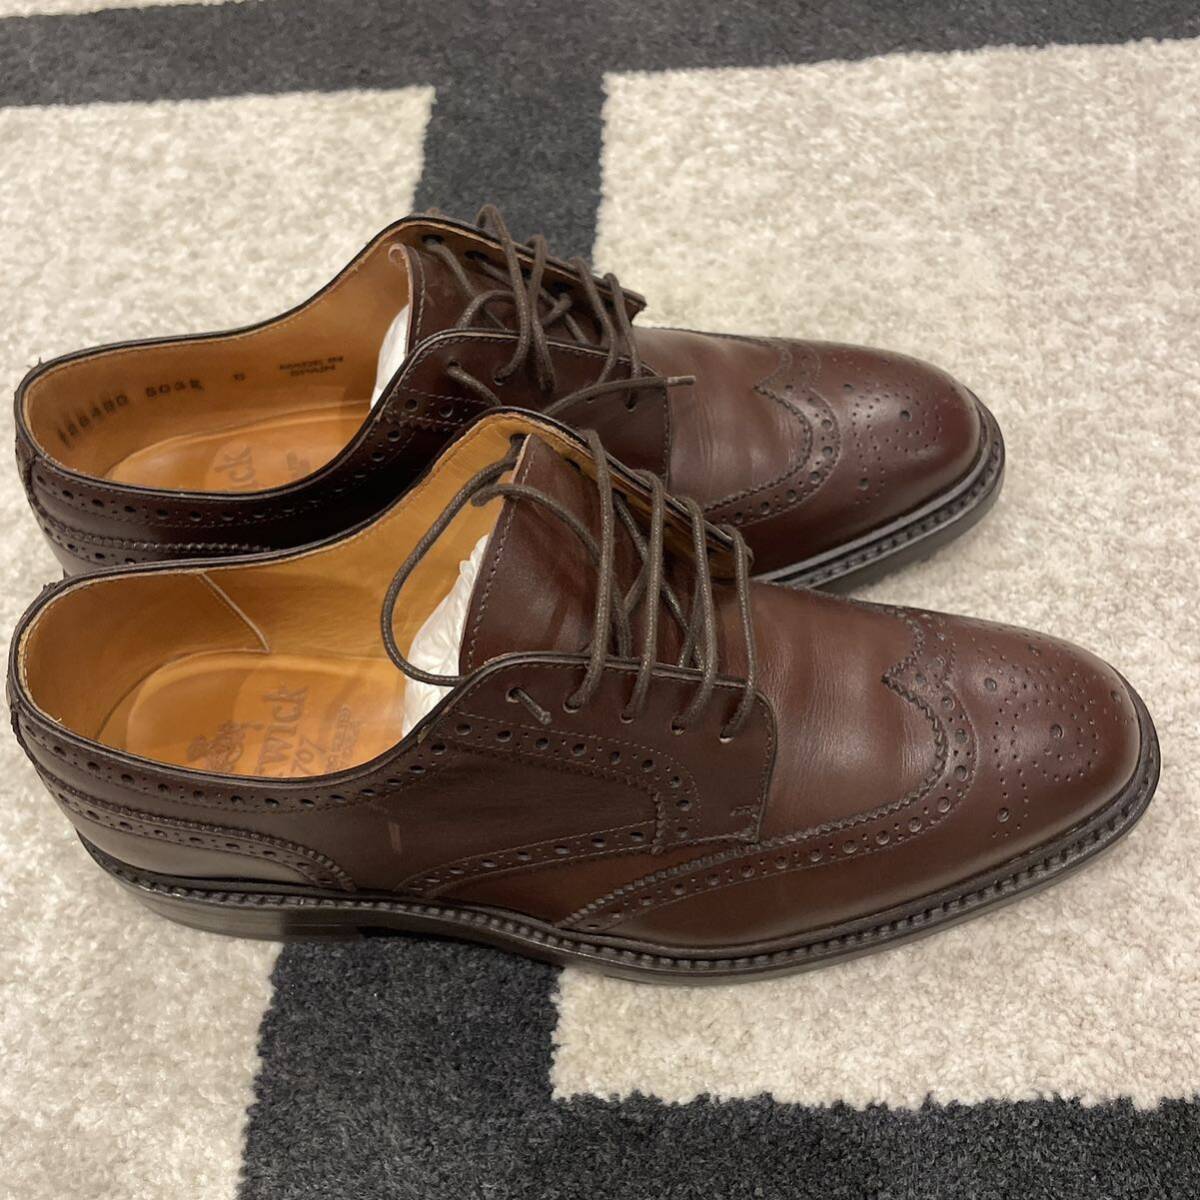 ⑩ ほぼ新品 Berwick バーウィック ウィングチップ 革靴 レザーシューズ 6 ブラウン レザー ウイングチップ 靴 茶 メンズの画像4